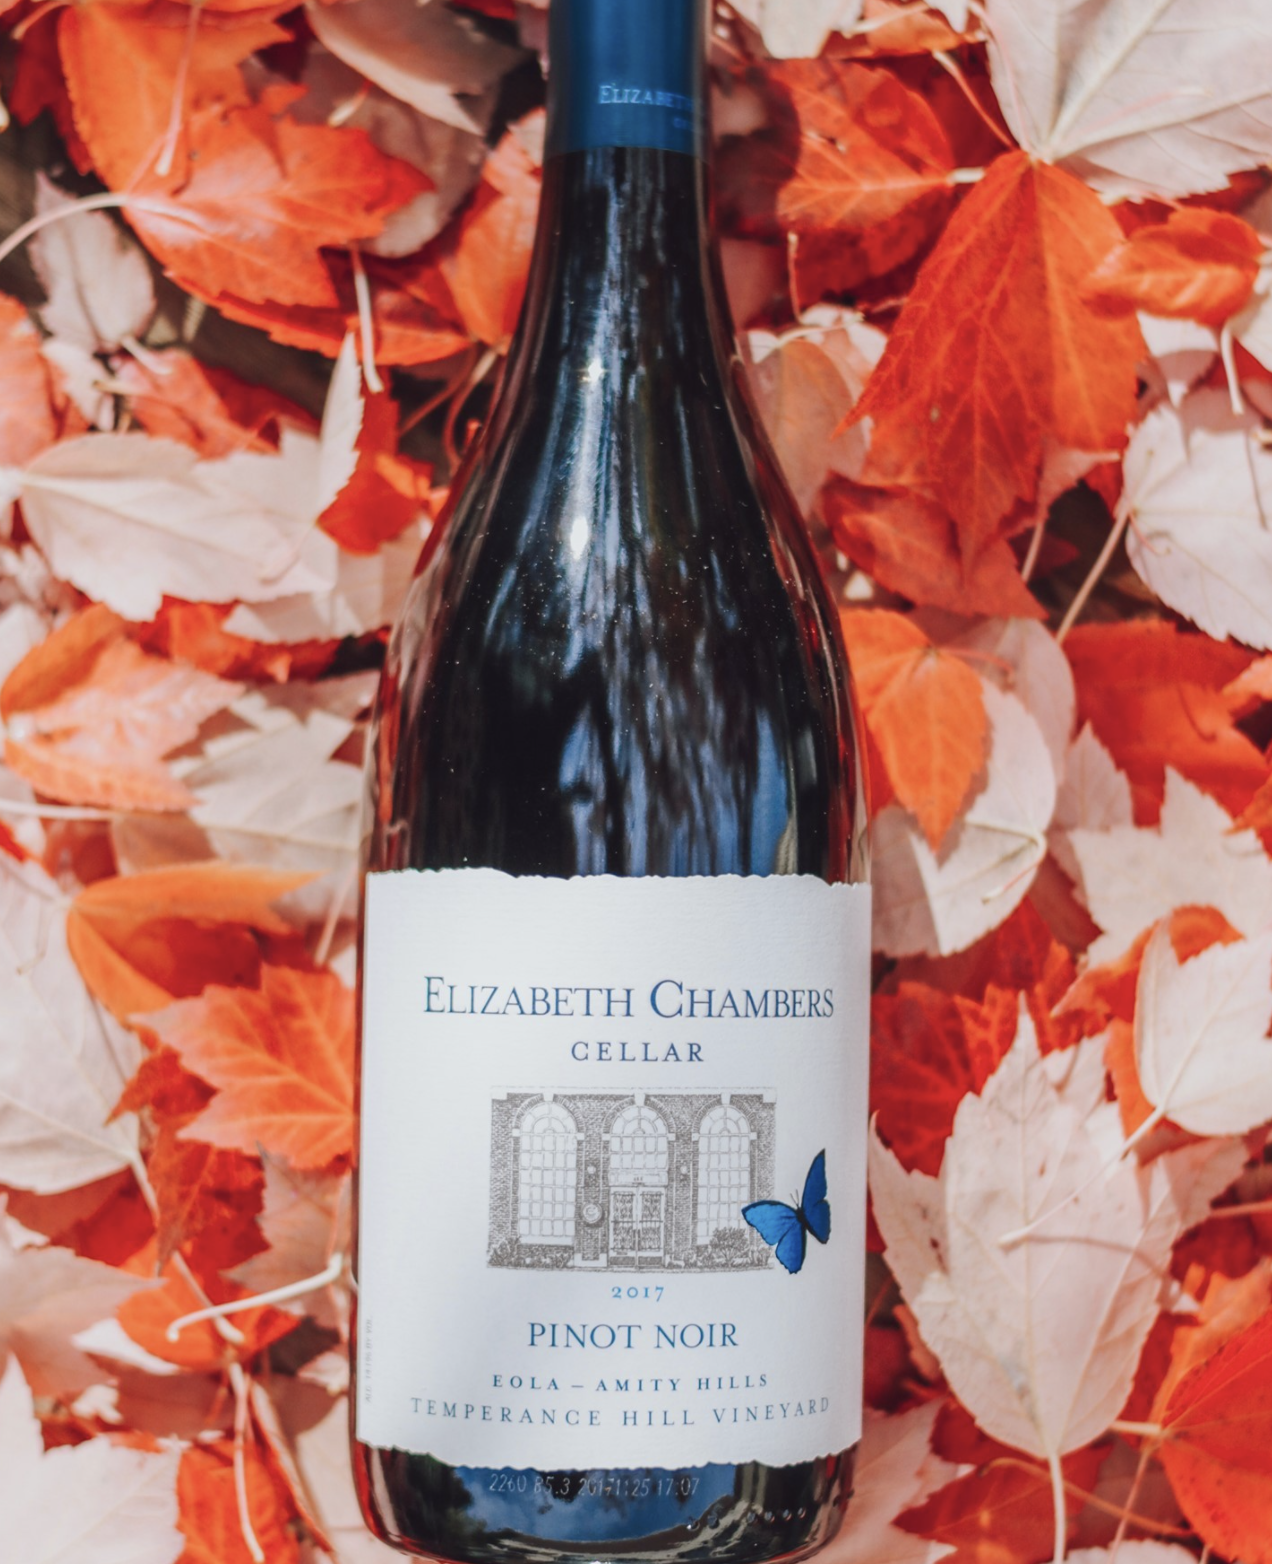 Elizabeth Chambers wine bottle